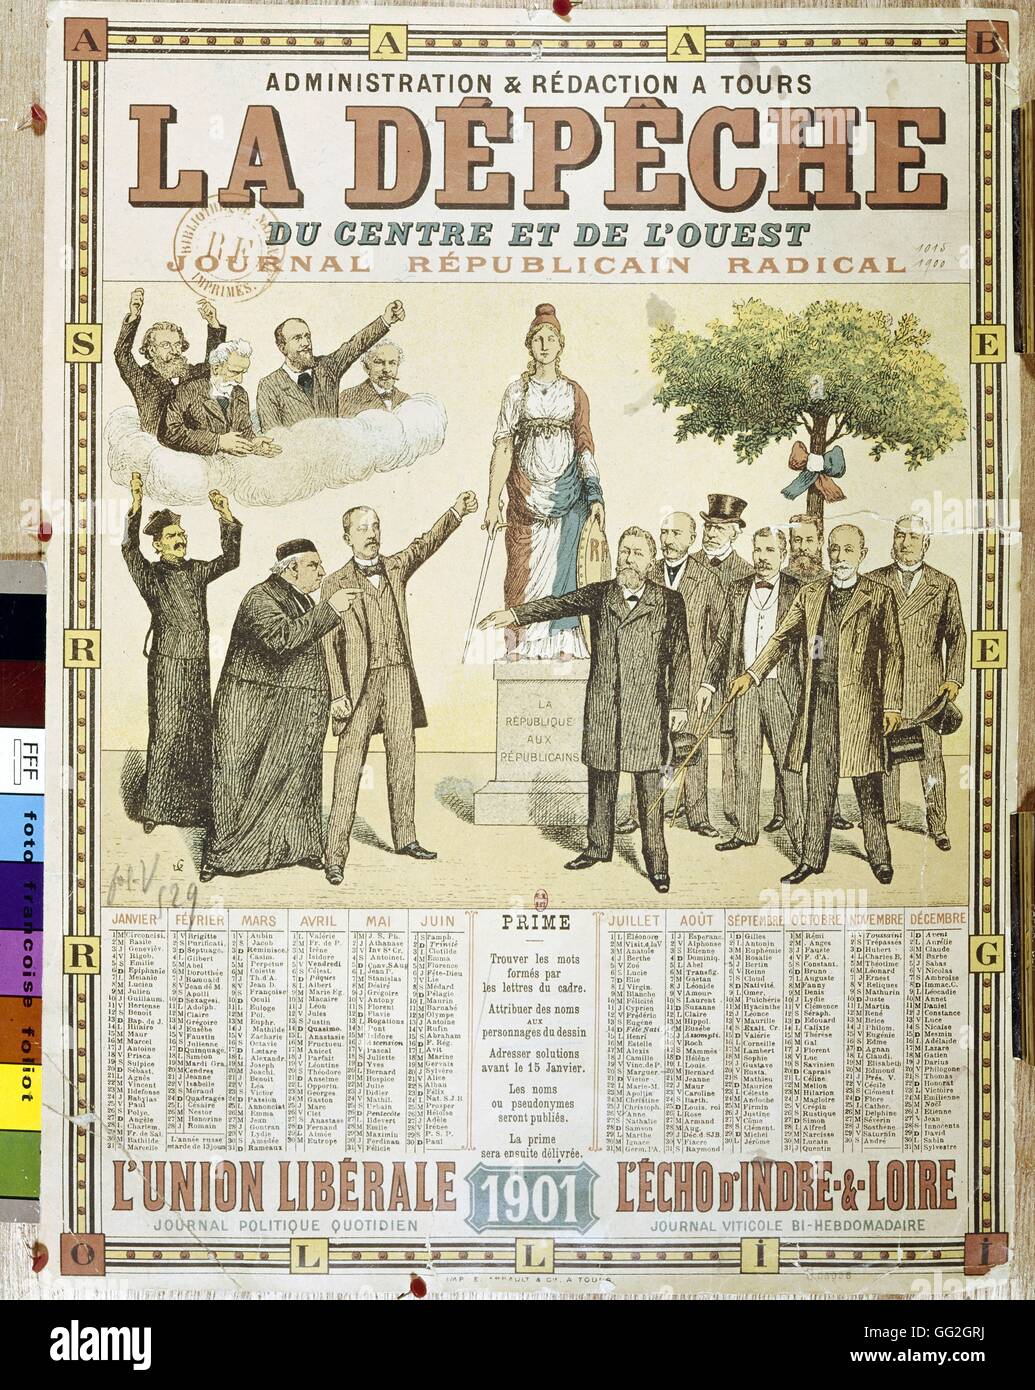 Titelseite von La Dépêche, radikale republikanische Zeitung. Französisch, 1901. Privatsammlung Stockfoto